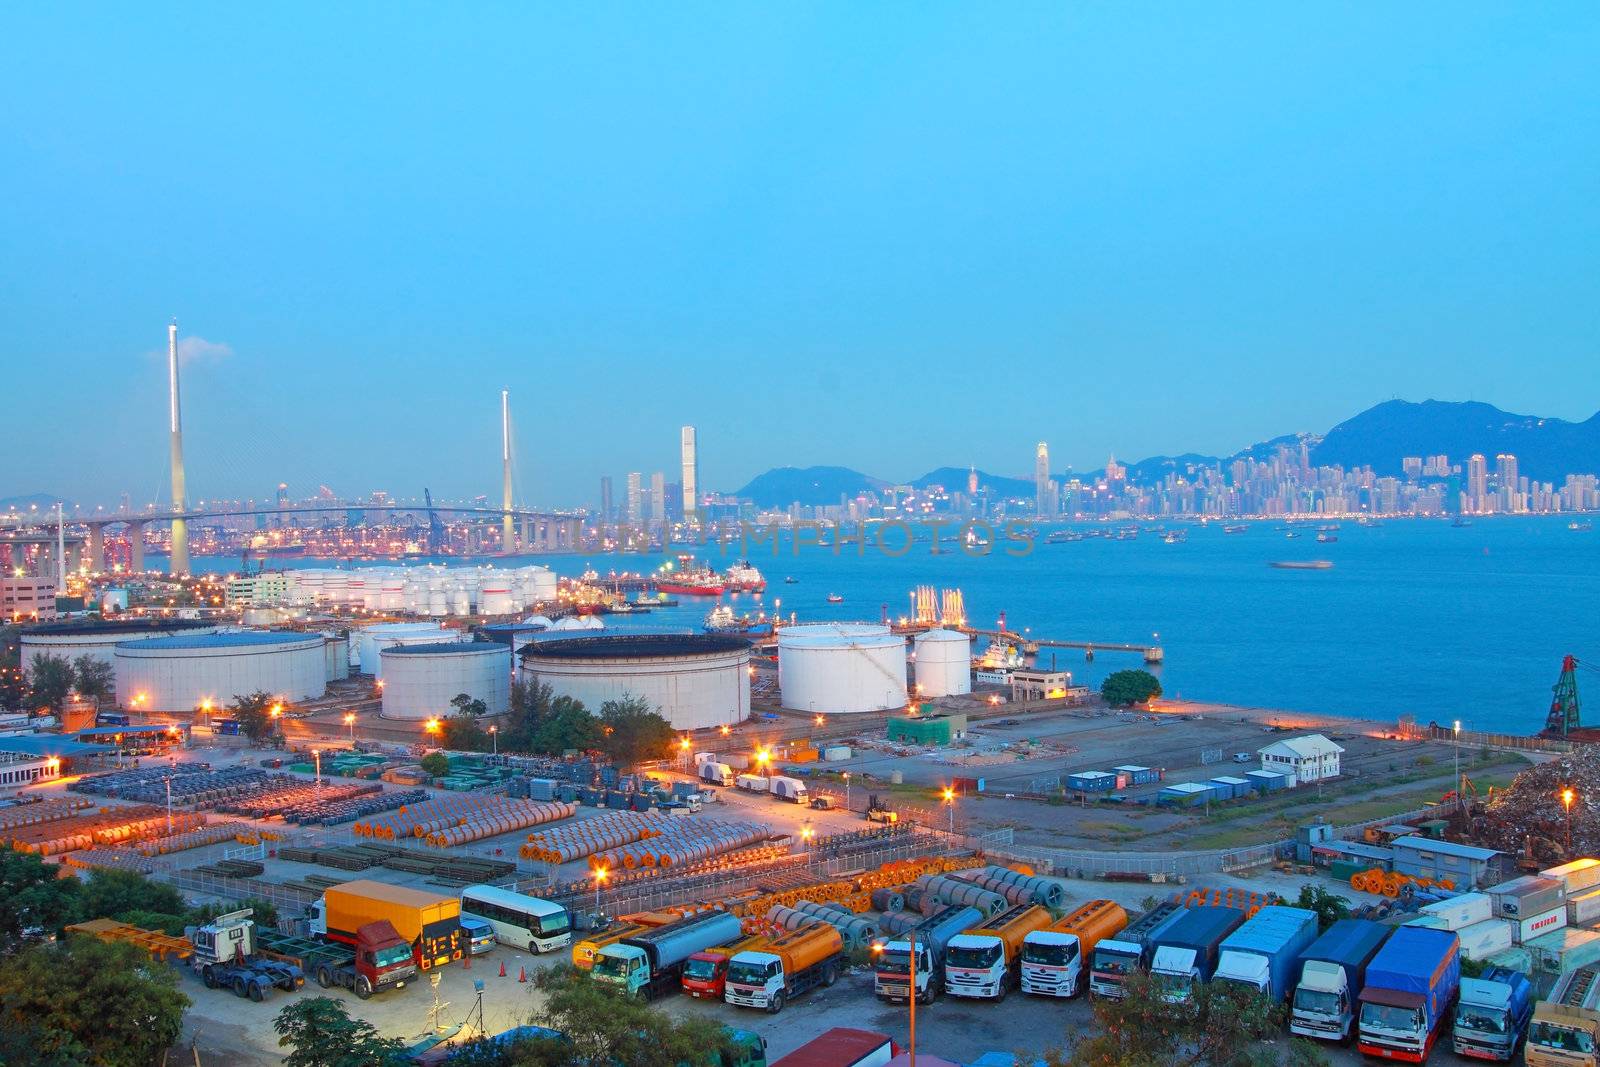 Hong Kong bridge and cargo container terminal